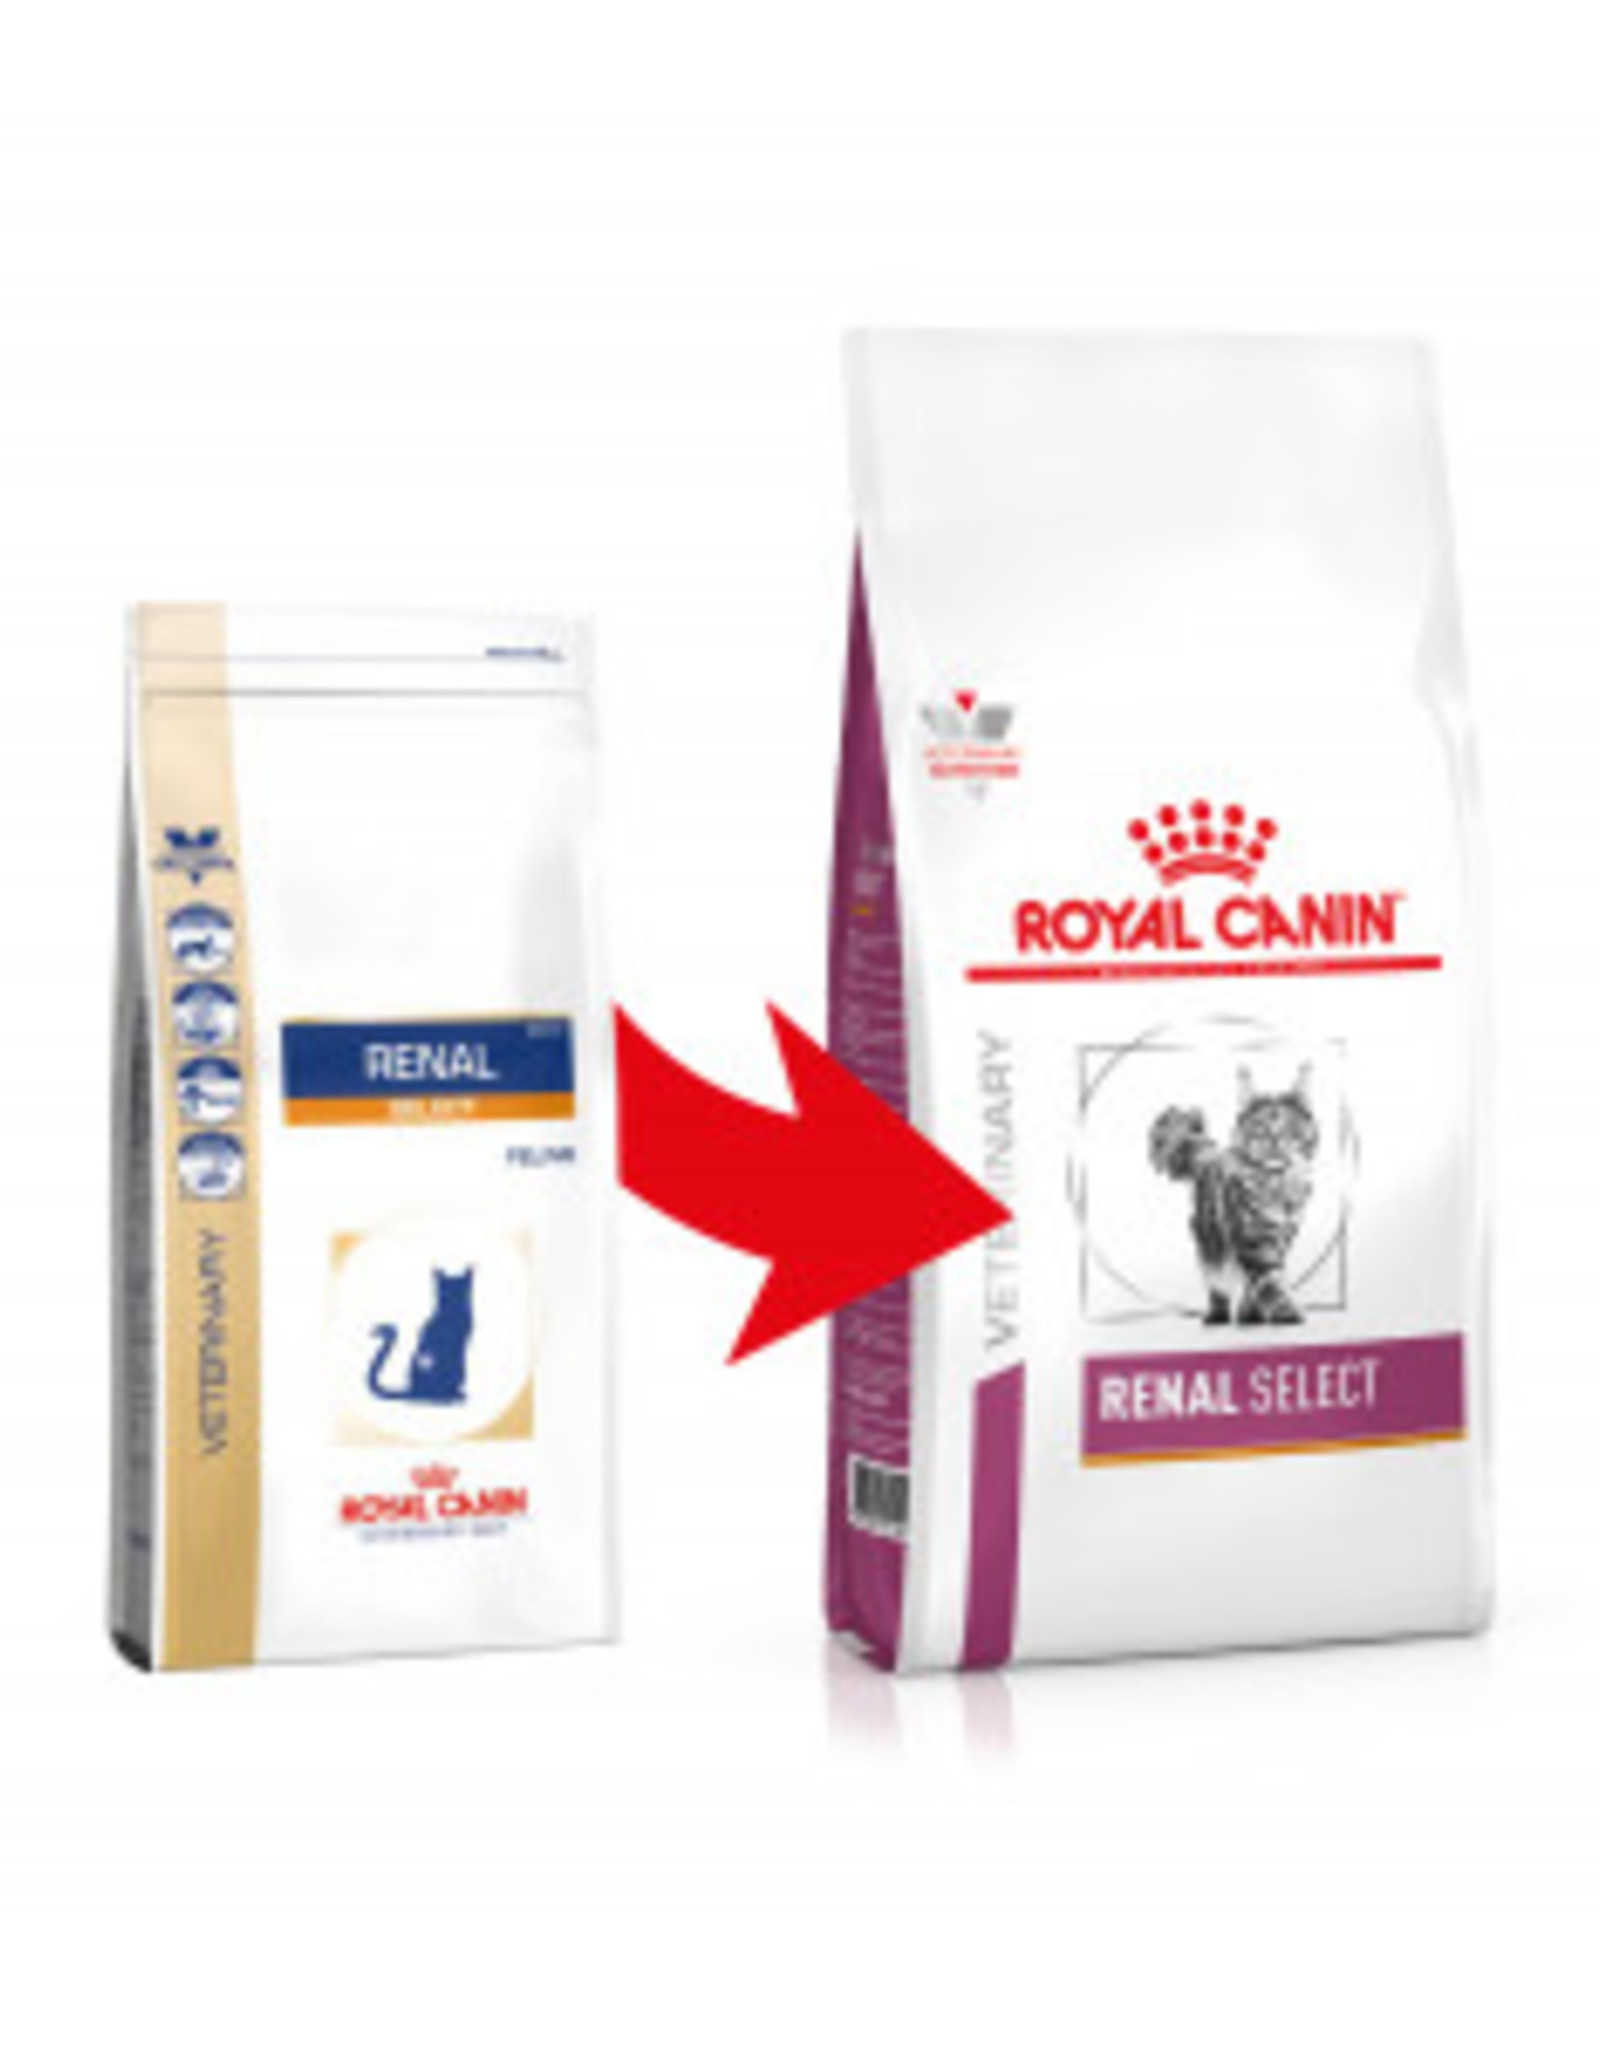 Royal Canin Royal Canin Vdiet Renal Select Katze 400g